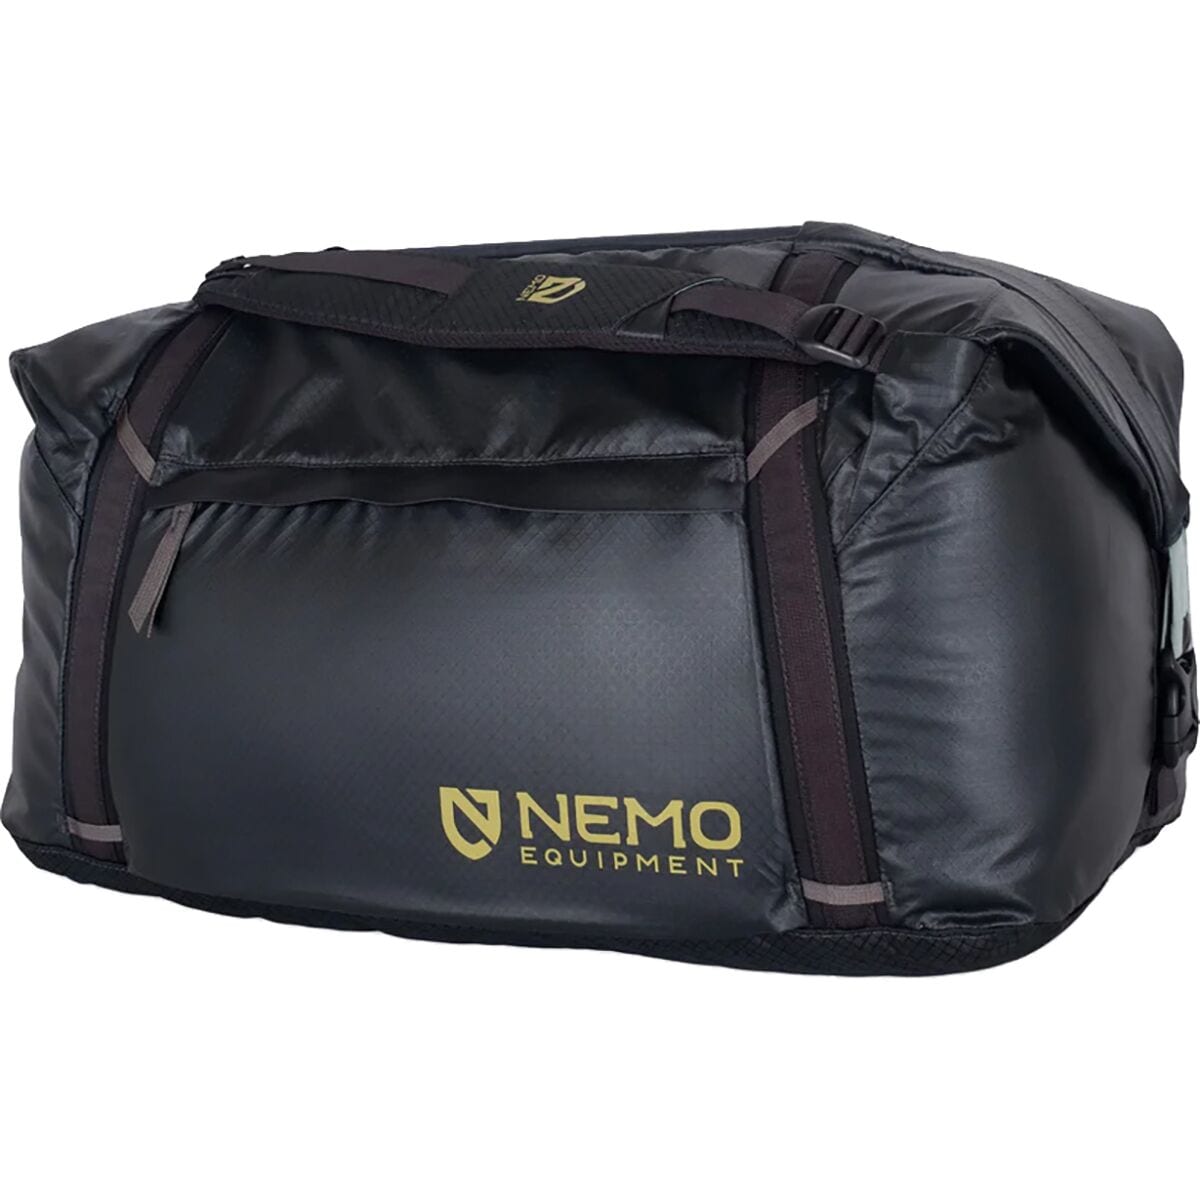 цена Двойная трансформируемая спортивная сумка объемом 70 л Nemo Equipment Inc., черный